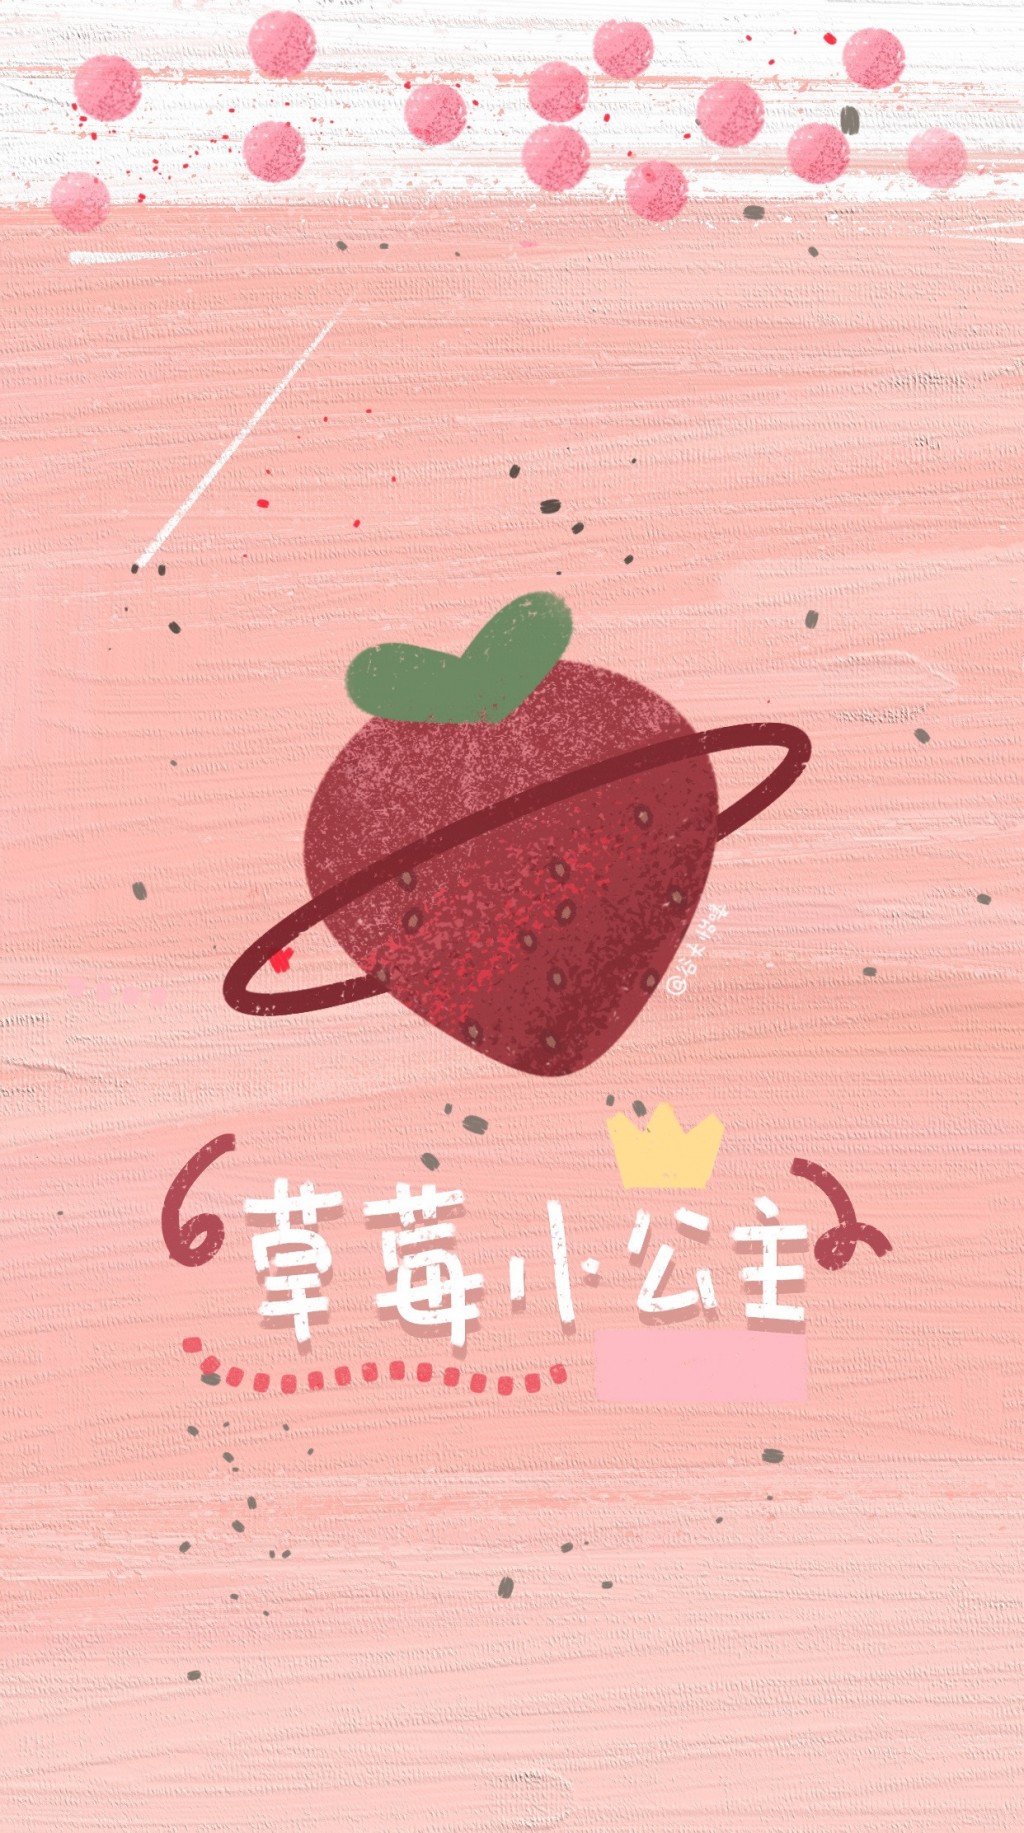 网红创意奶茶系列手绘手机壁纸